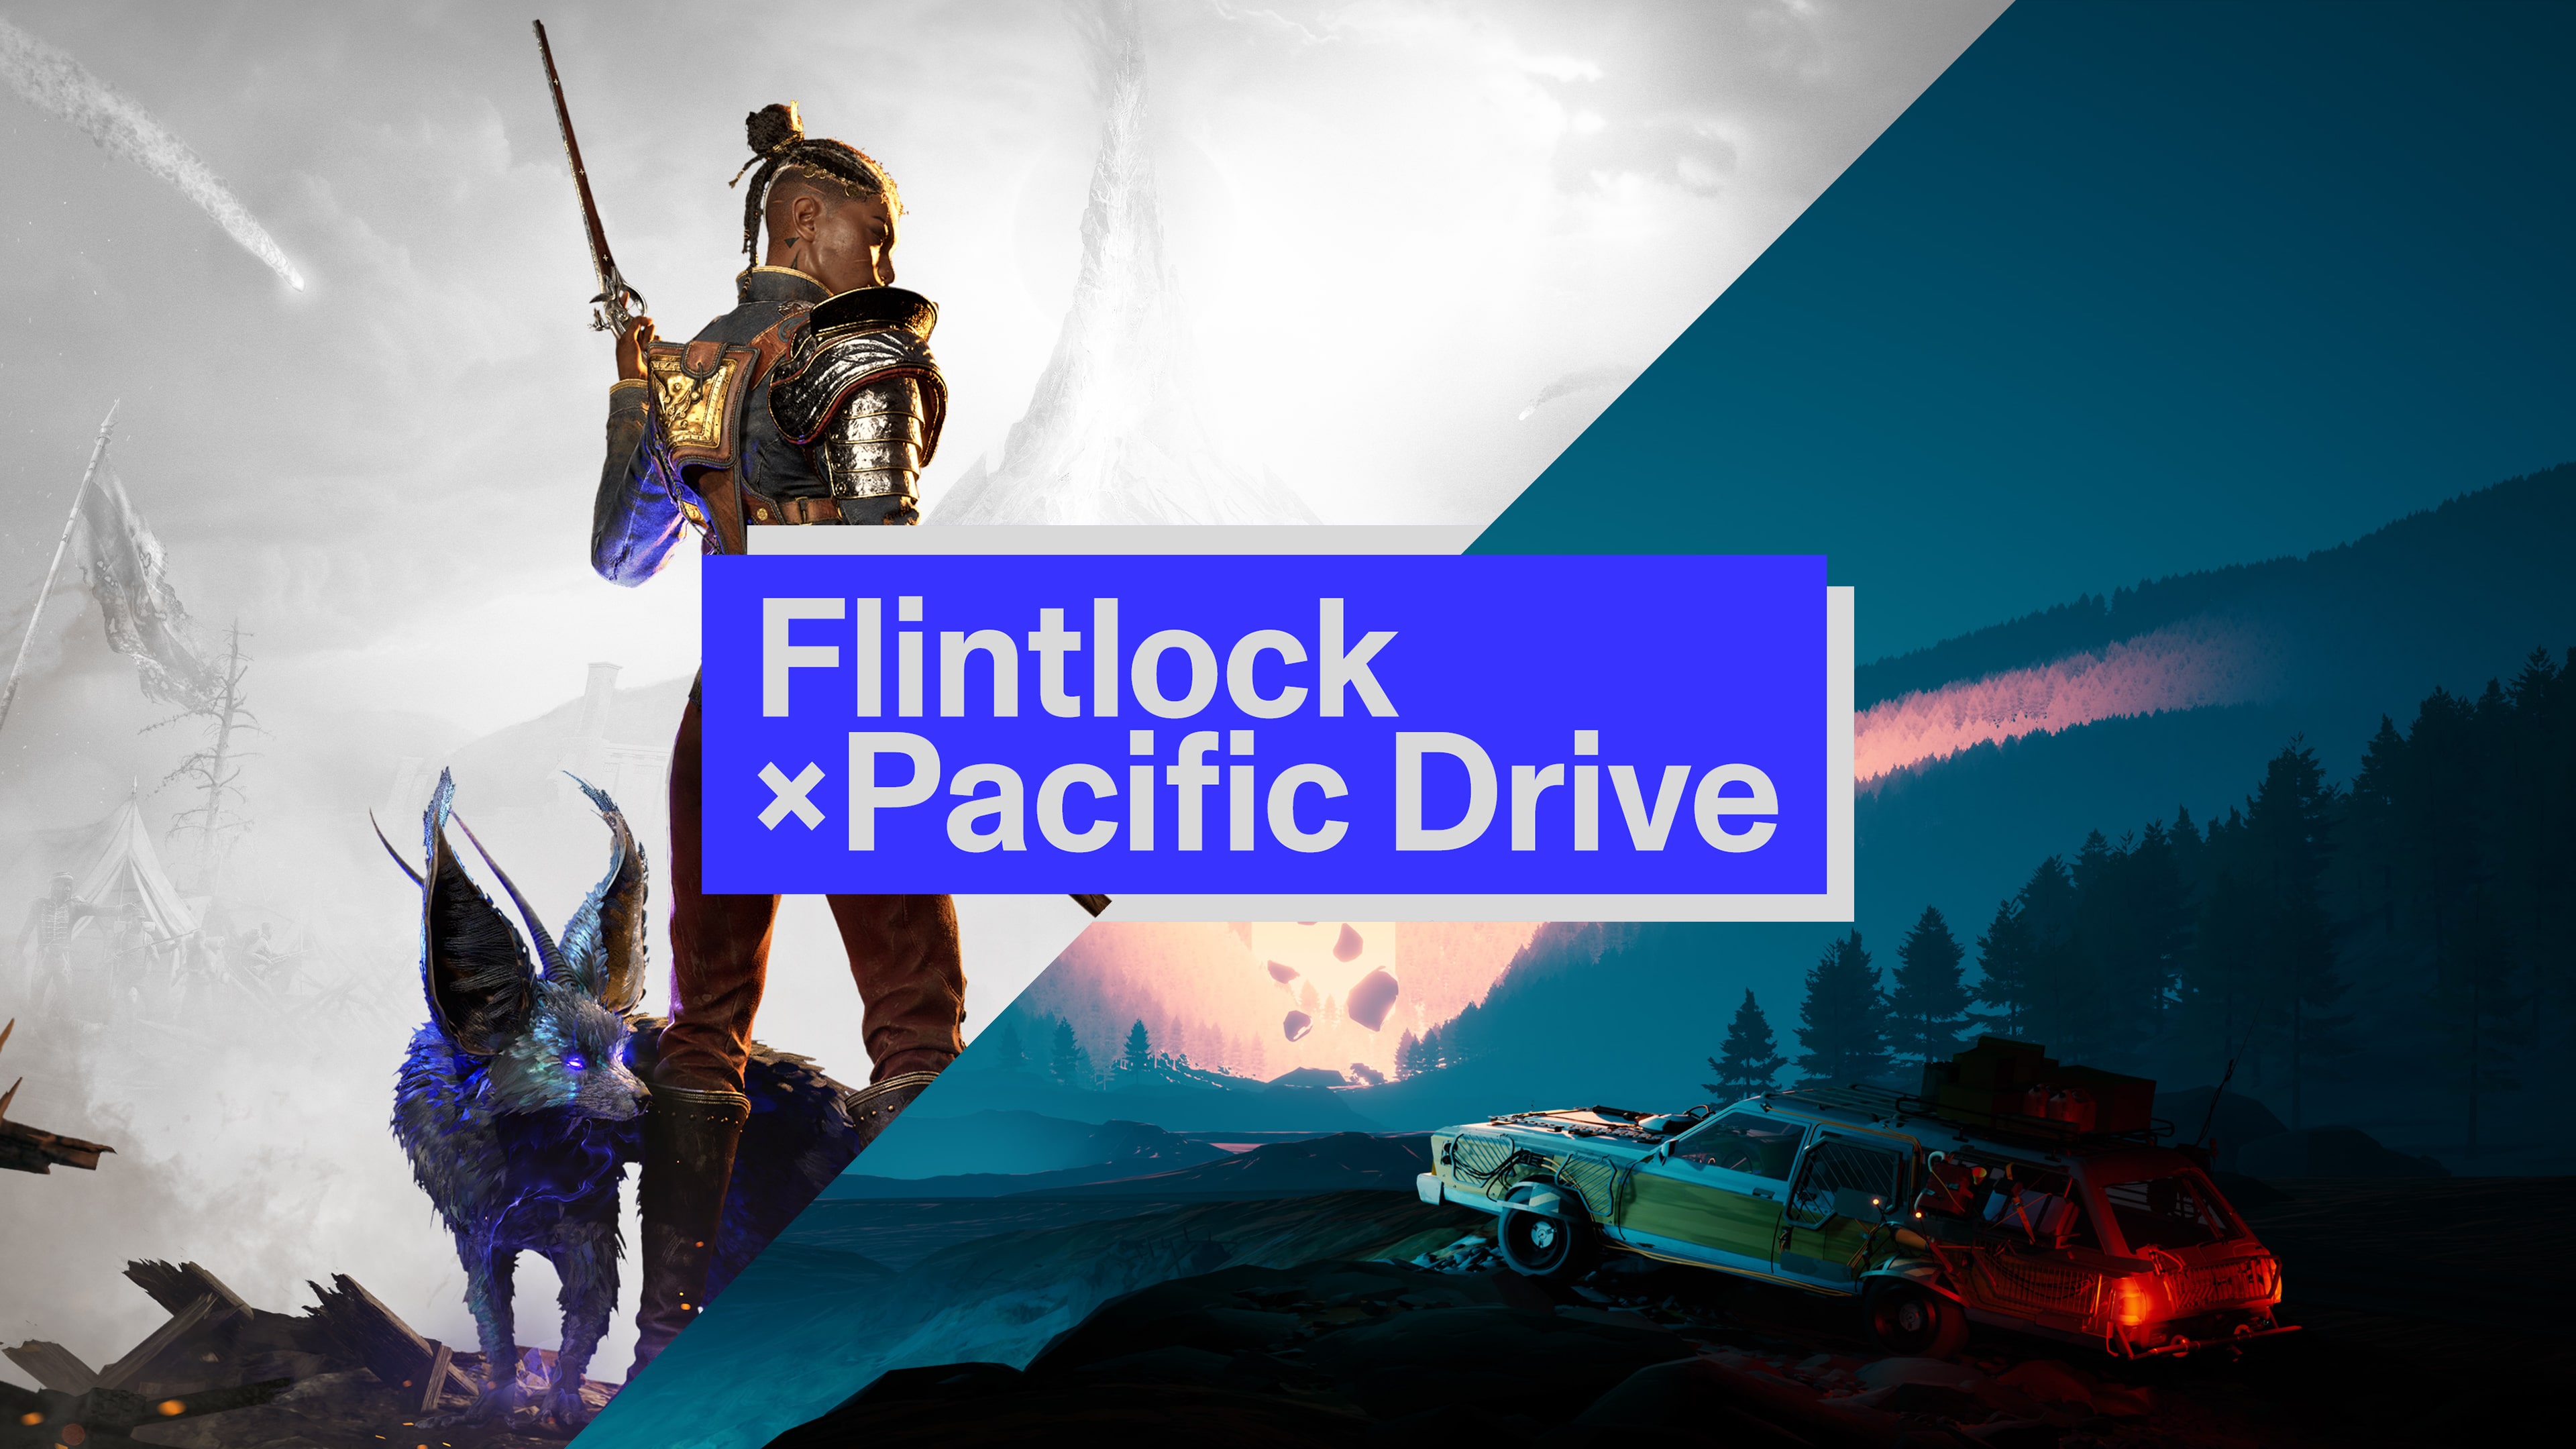 Flintlock × Pacific Drive